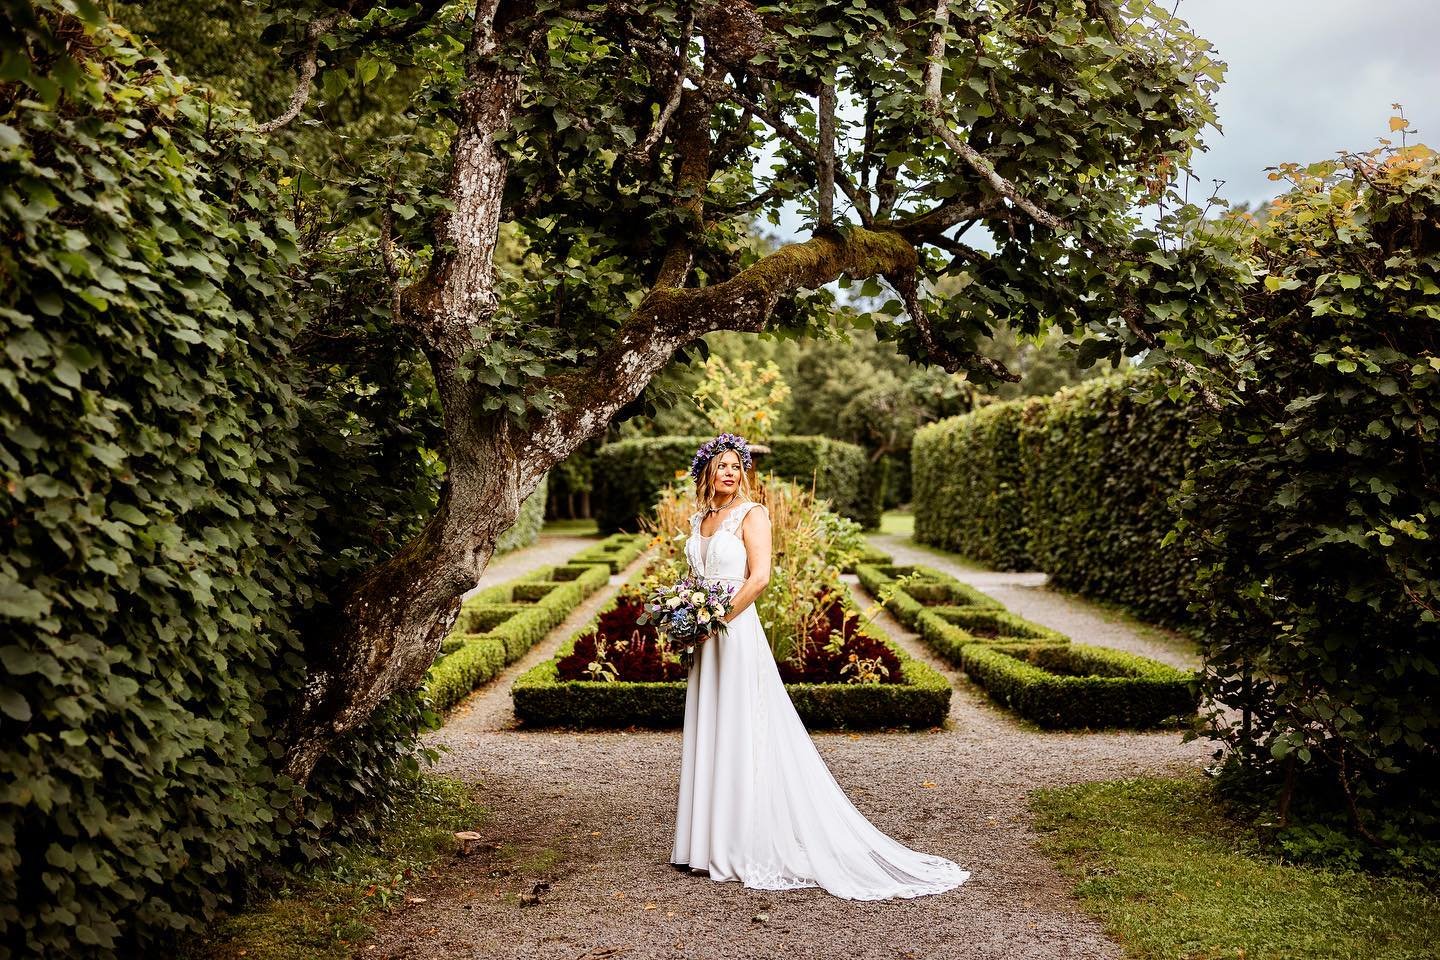 An absolutely stunning bride from an August wedding 💛. Also, a great location, the garden at Ulriksdal&rsquo;s castle! 
@ciccipolbratt #ulriksdalsslottstr&auml;dg&aring;rd #ulriksdalskapell #br&ouml;llopsfotograf #weddingphotography